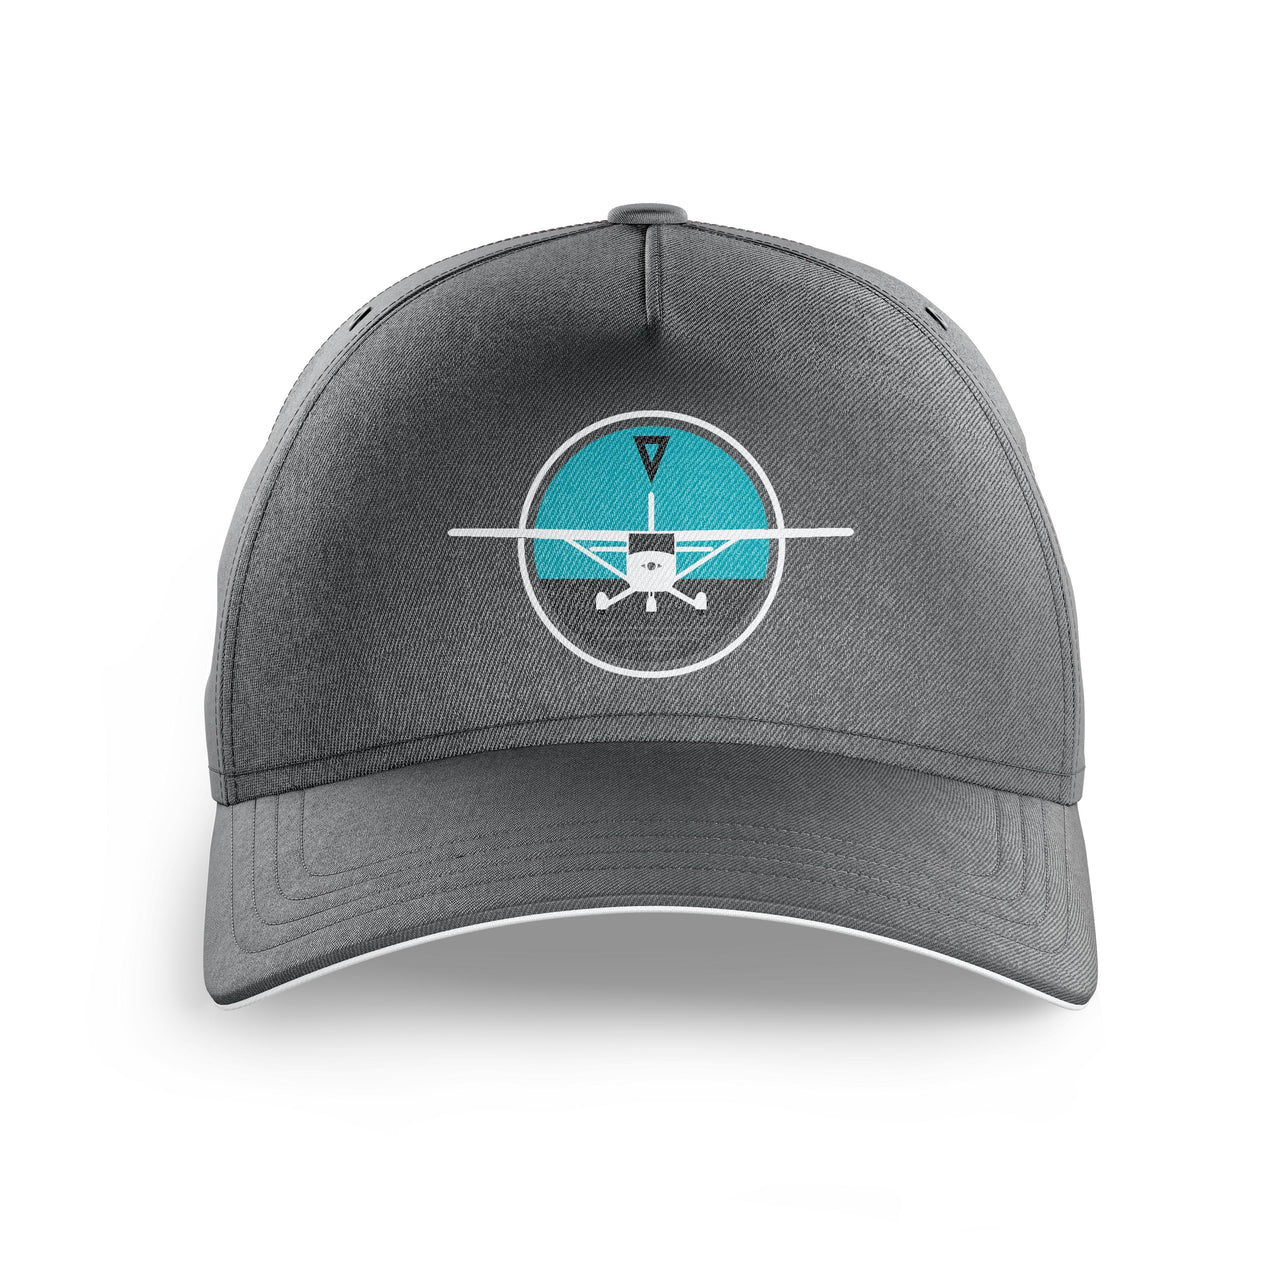 Cessna & Gyro Printed Hats